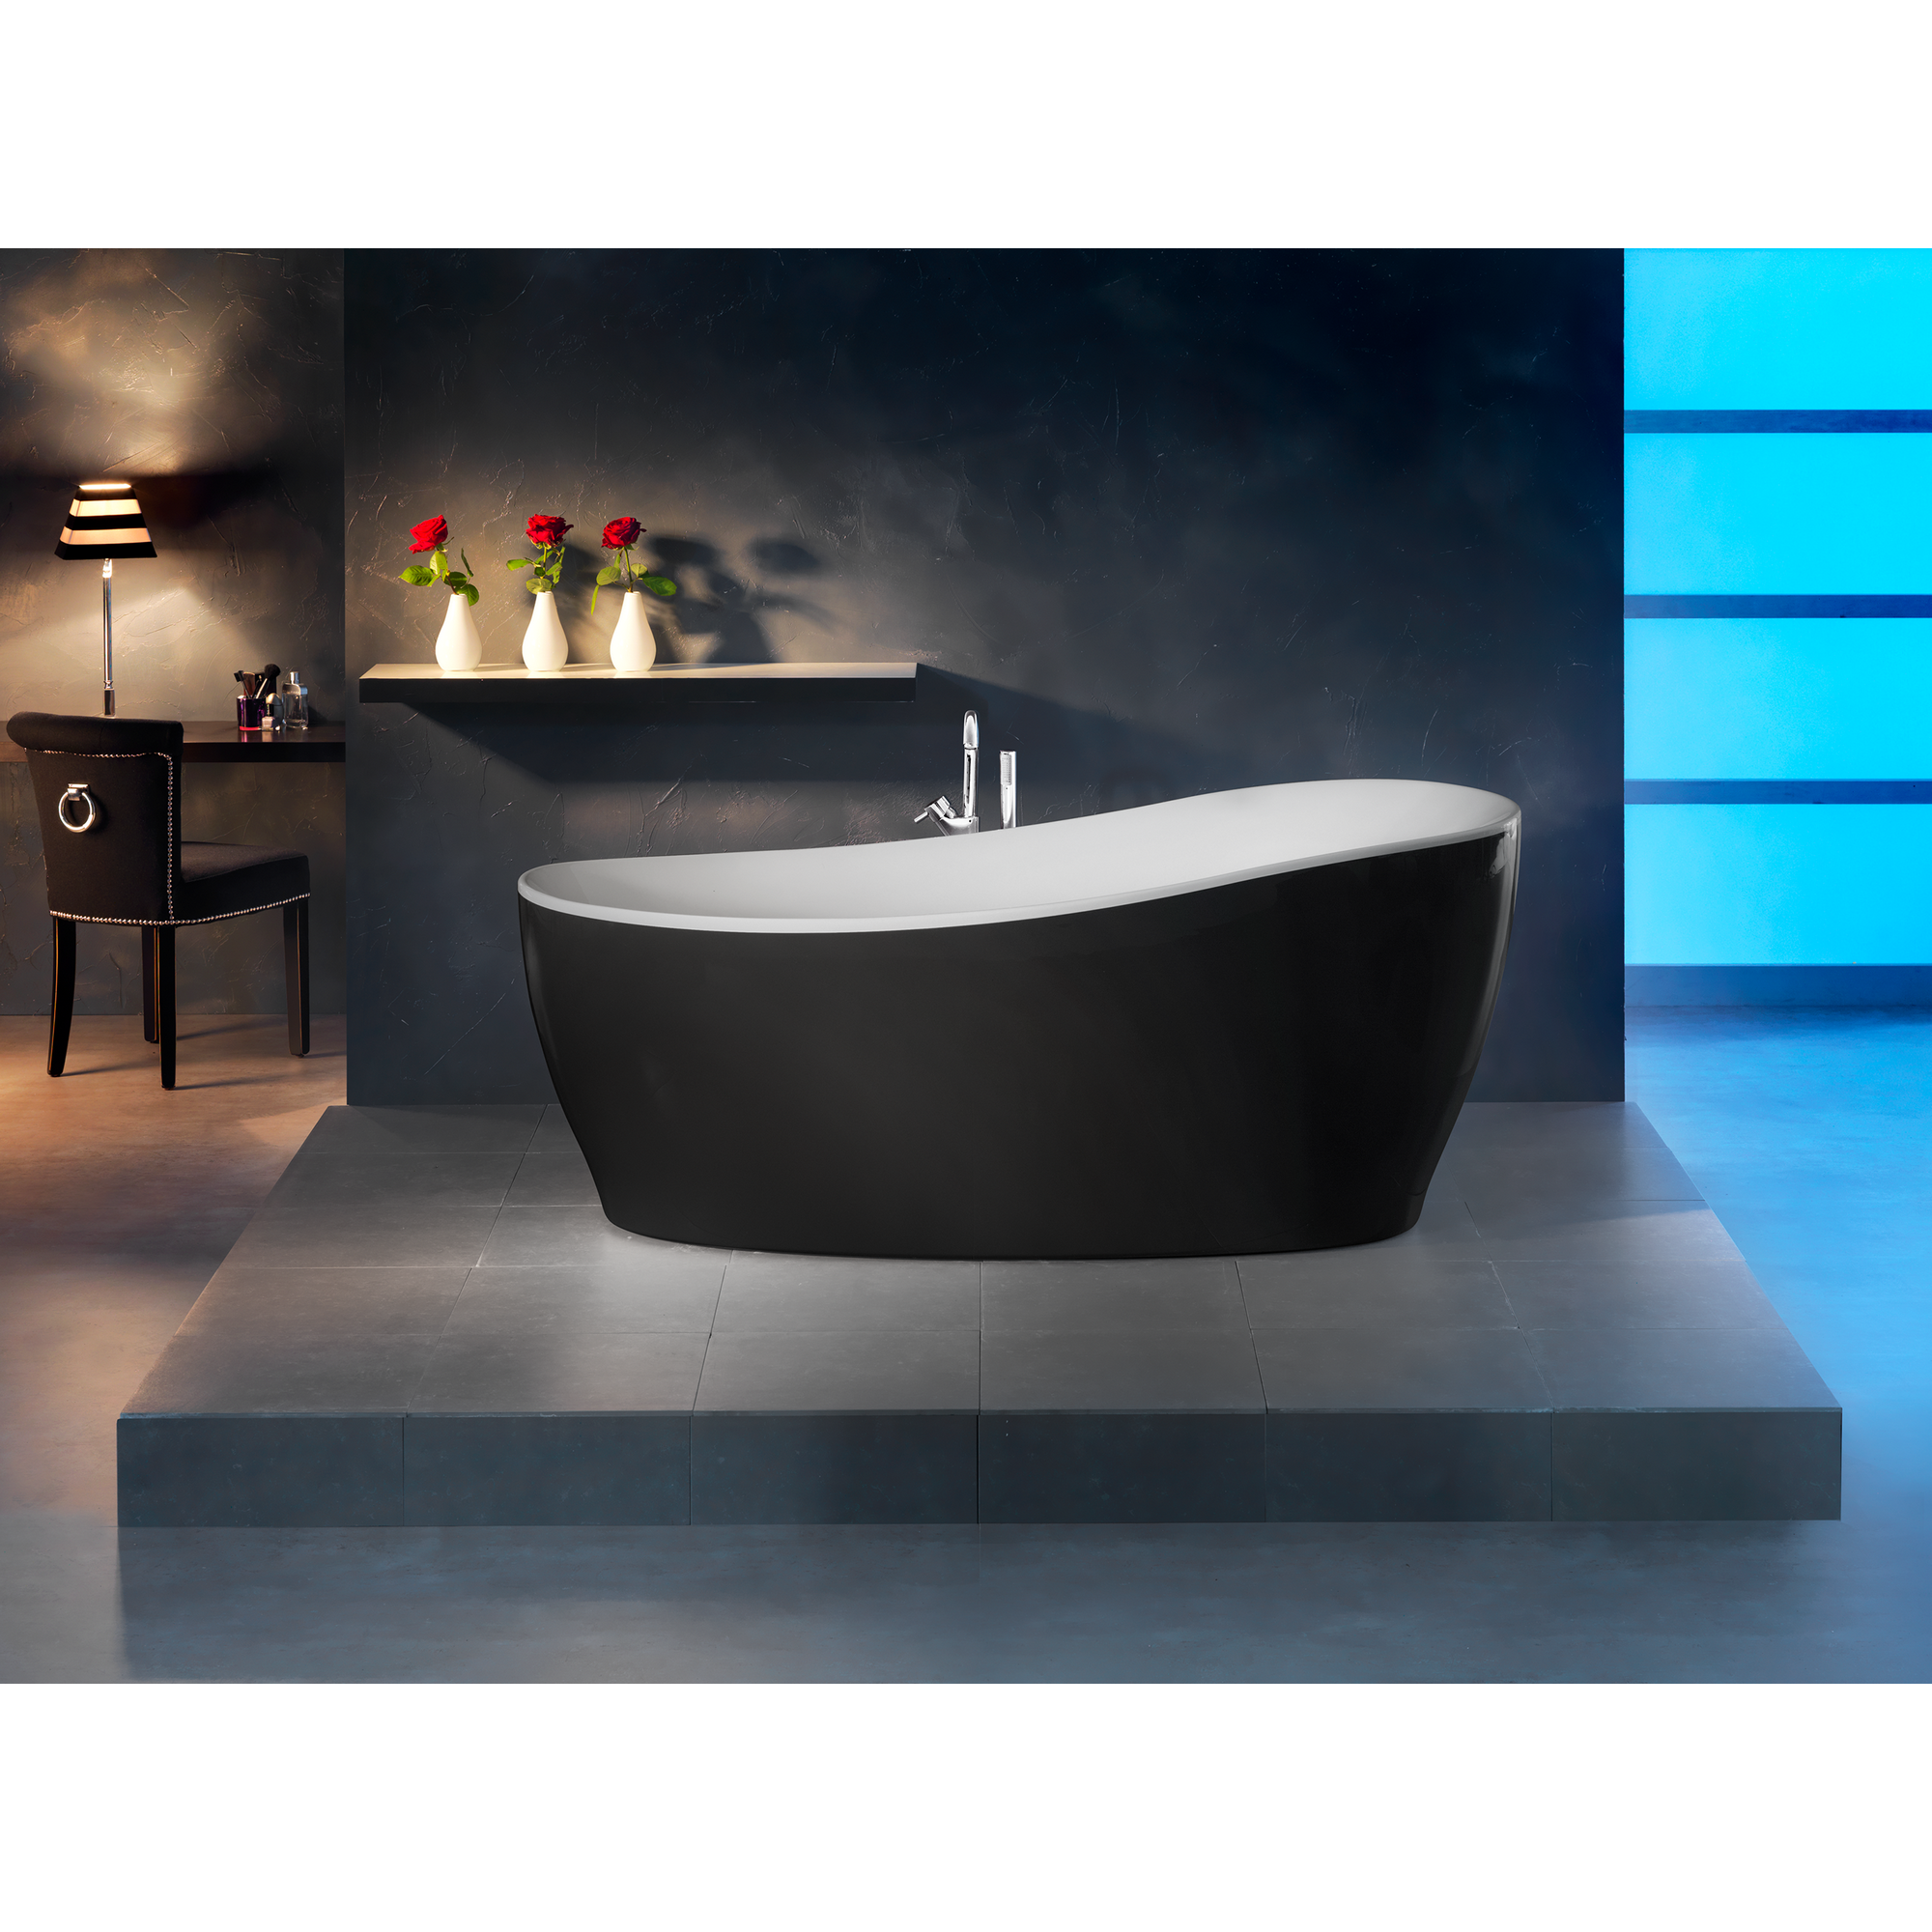 Badewanne 'Aviva' freistehend Sanitäracryl schwarz-weiß 1800 x 850 mm + product picture